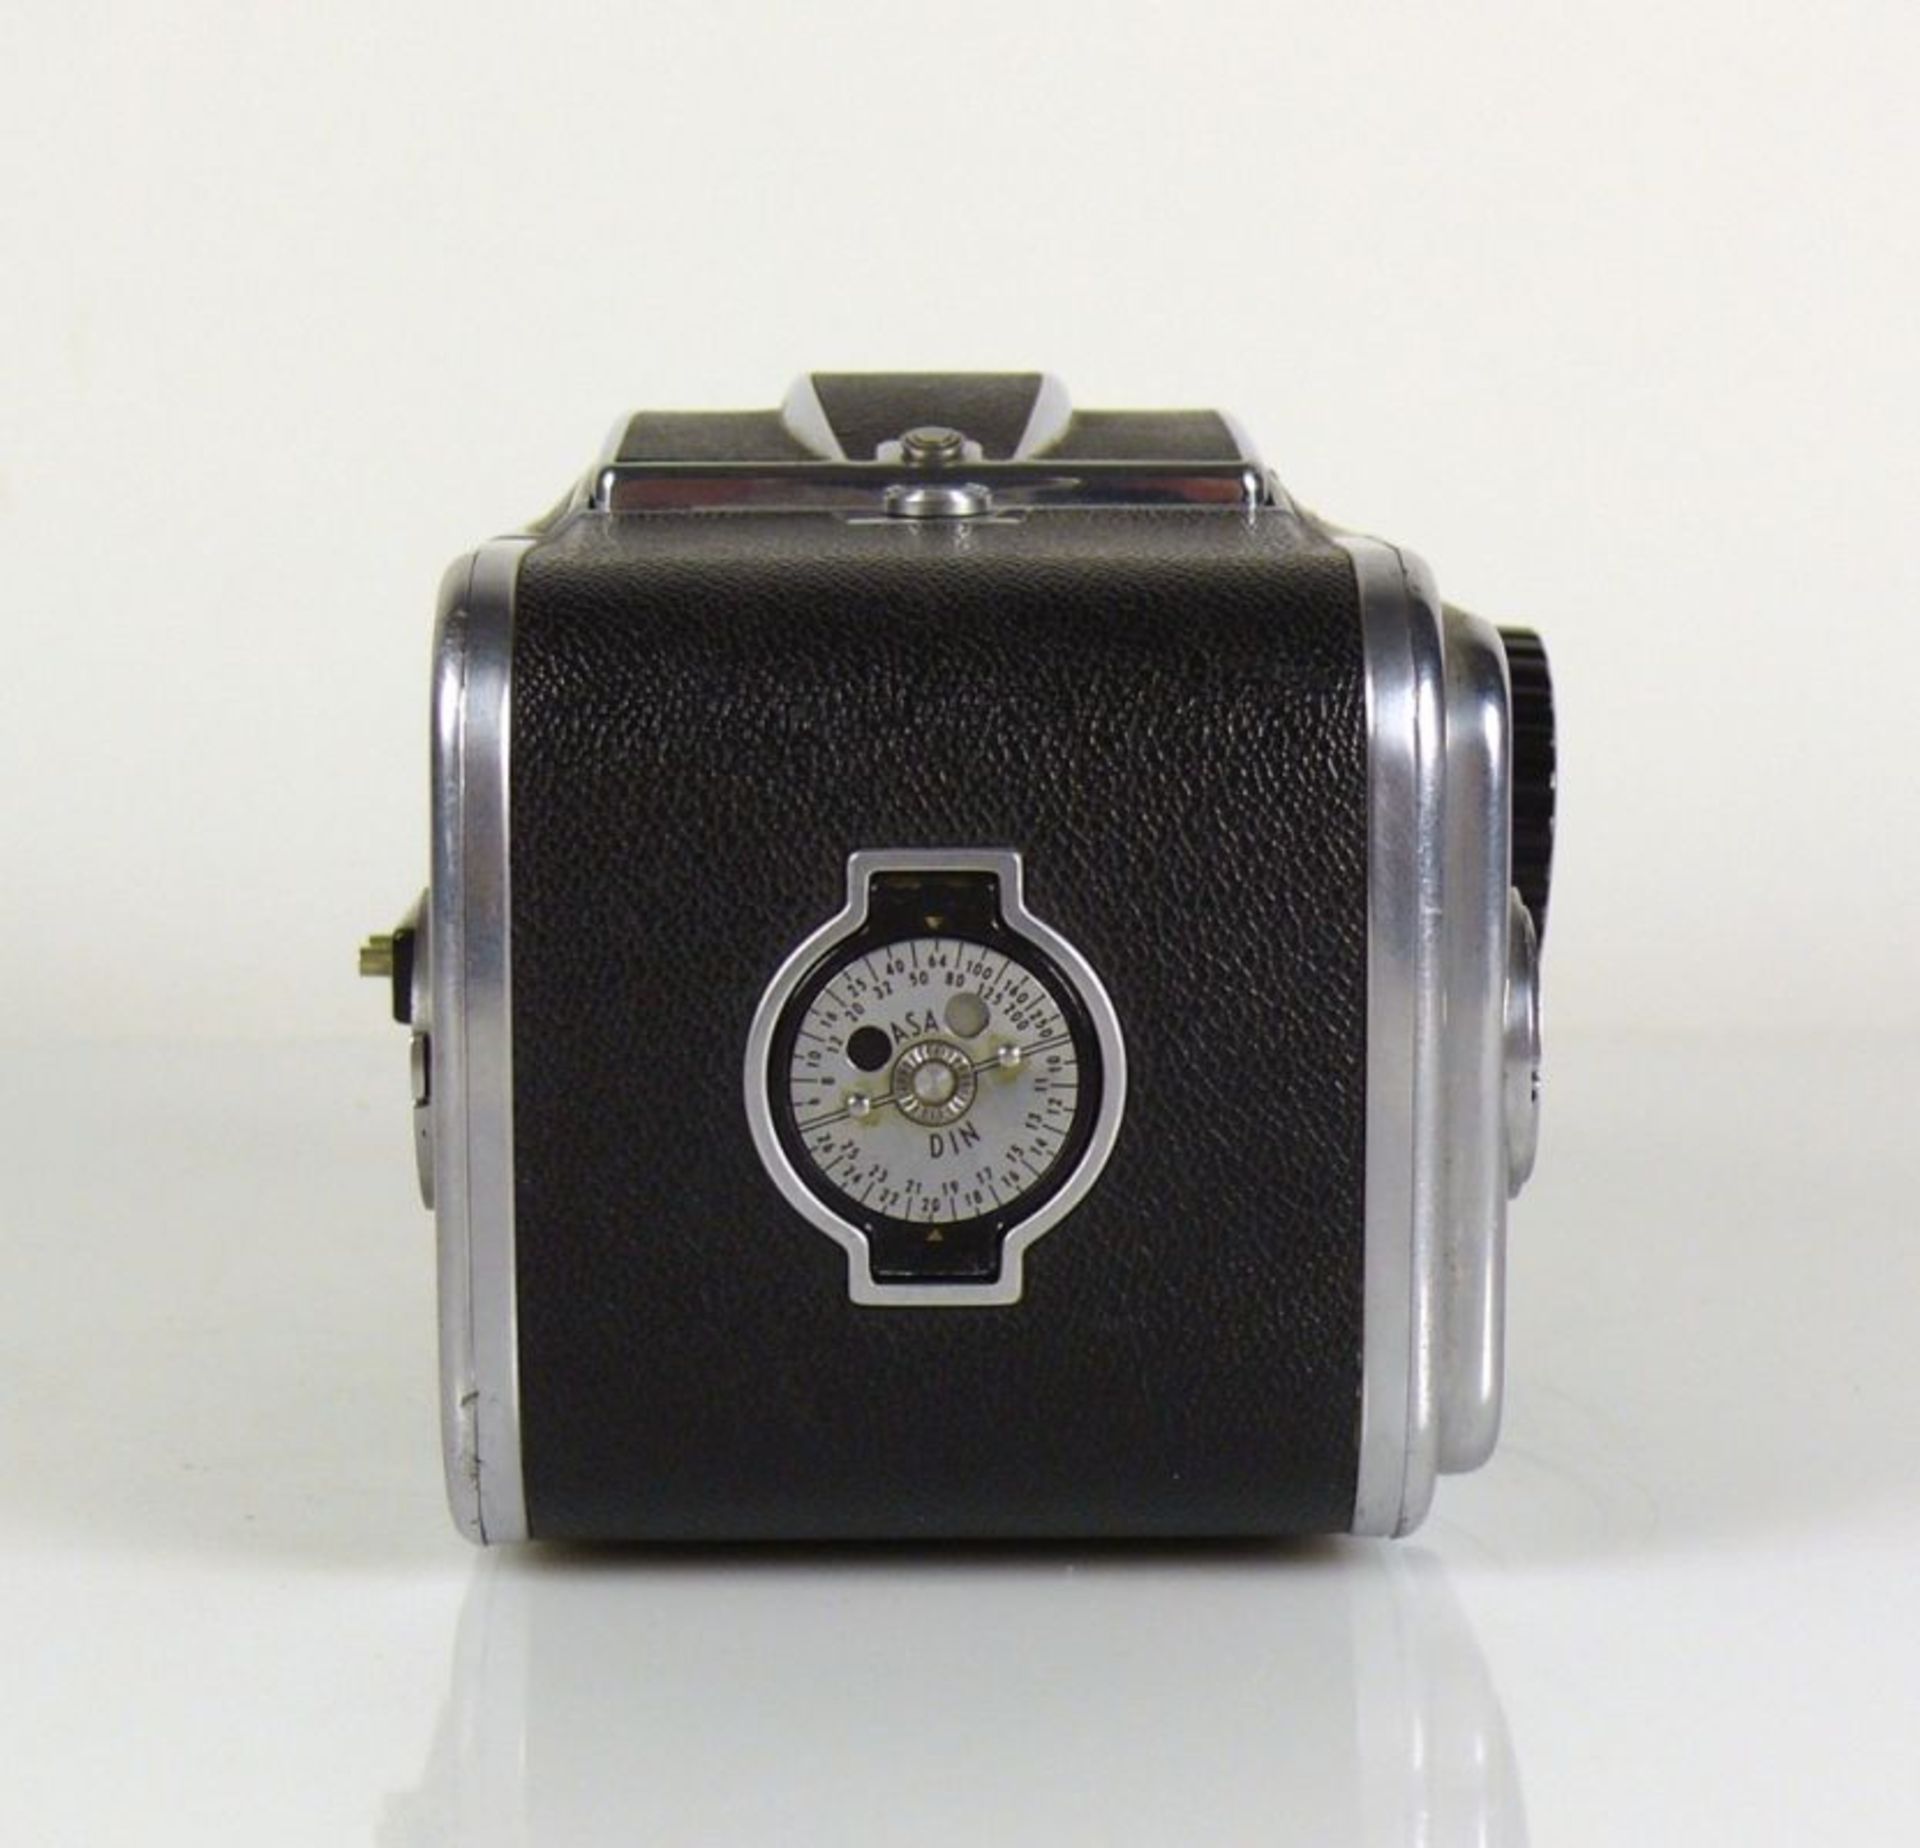 Hasselblad-Kamera Carl Zeiss-Objektiv Nr. 1204620; auf Gehäuse bezeichnet: 1000f; Funktion nicht - Bild 2 aus 7